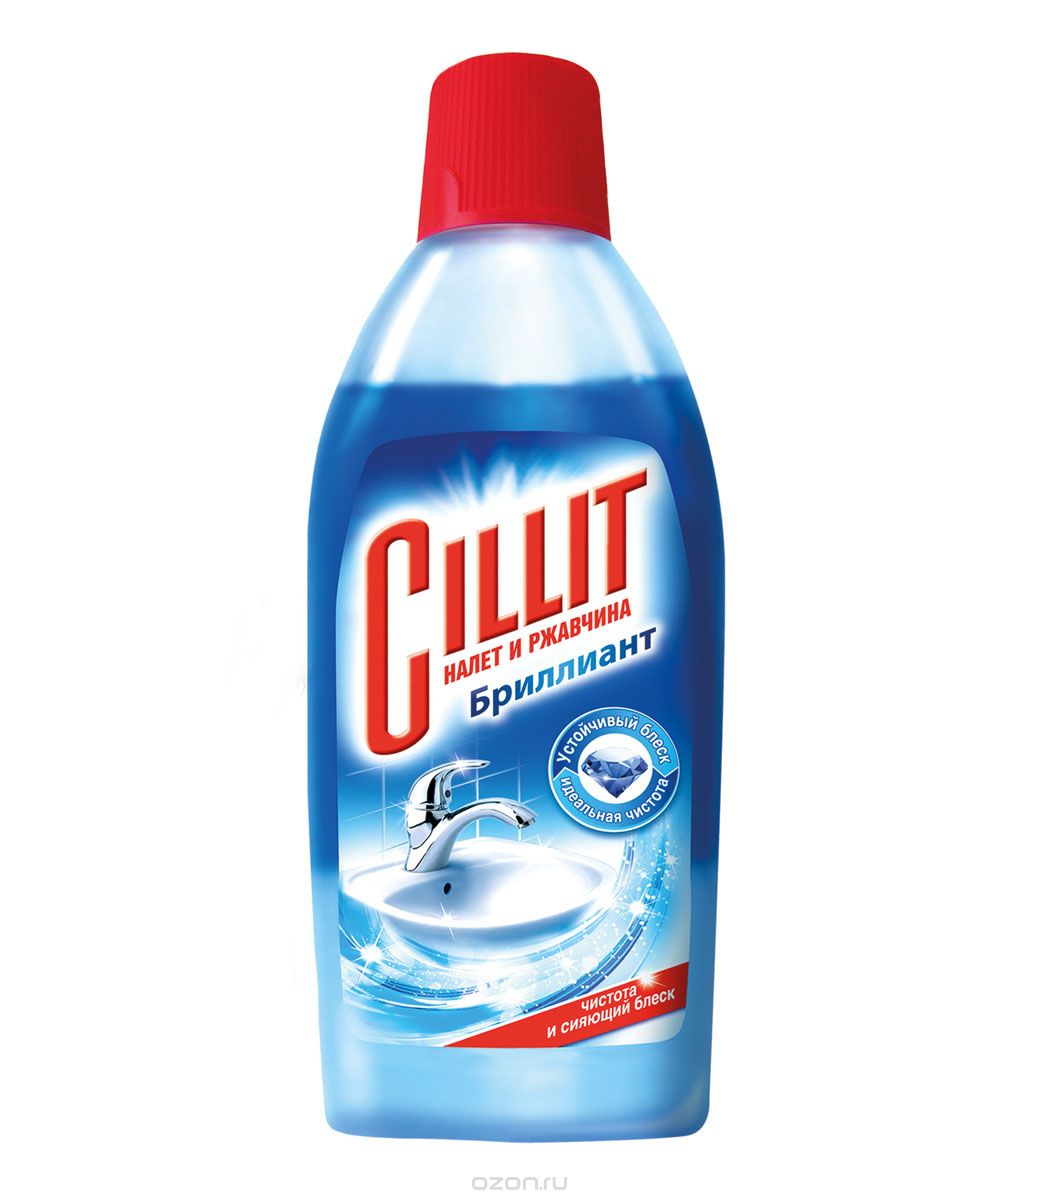 Средство для ванной и туалета Cillit Чистящее средство для удаления налета и ржавчины "Cillit Brilliant", 450 мл, 510